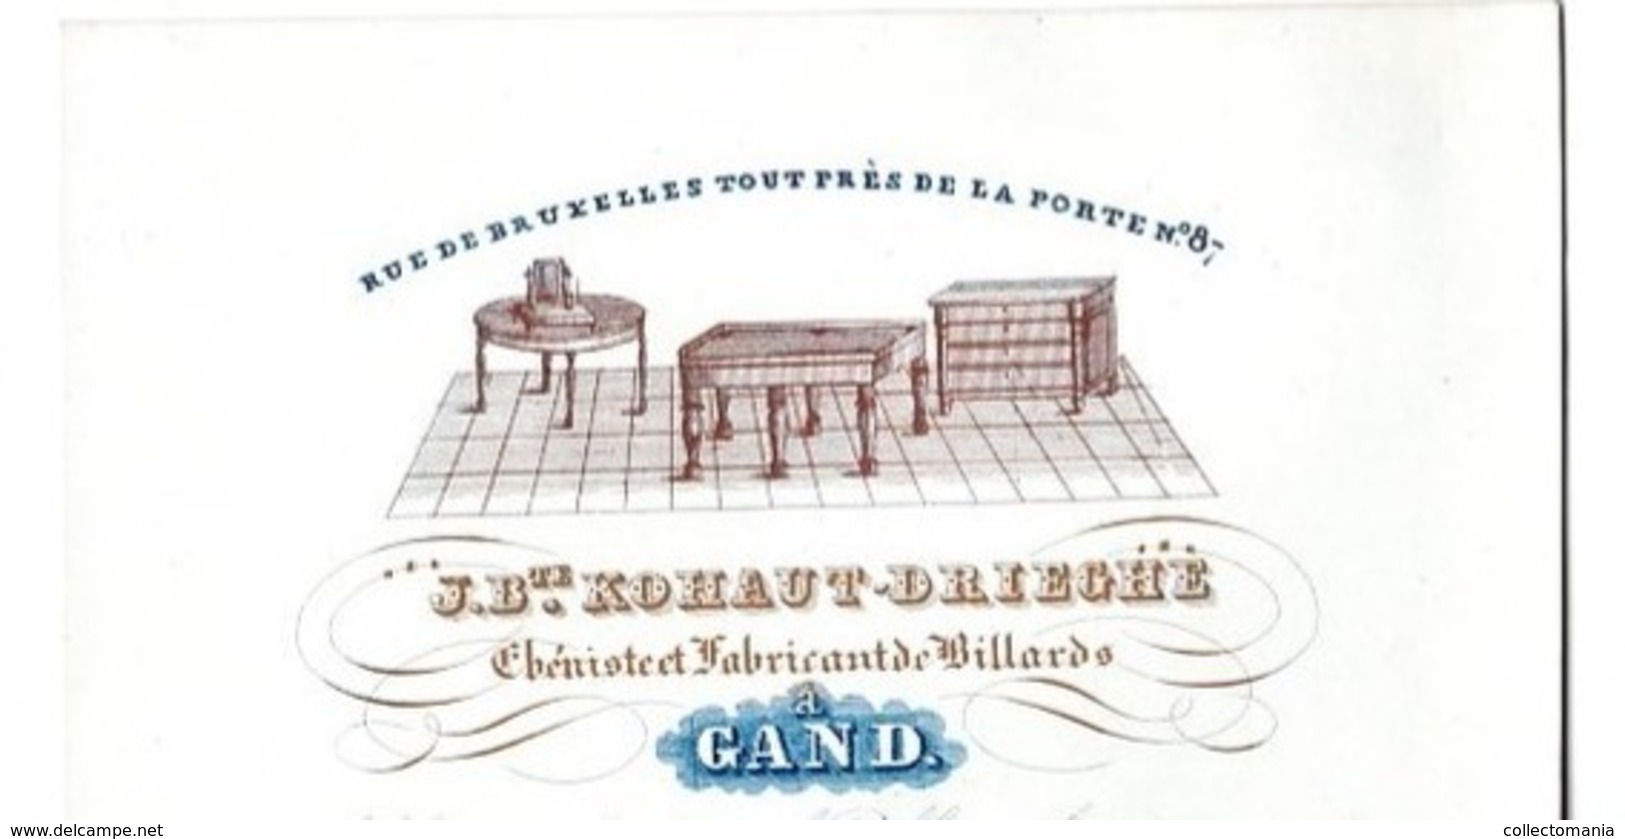 1 Porseleinkaart  Fabricant Billiart Billard 1840 EBBENIST KOHAUT DRIEGHE à GENT - Litho F. & E. GHYSELYNCK - Porcelana